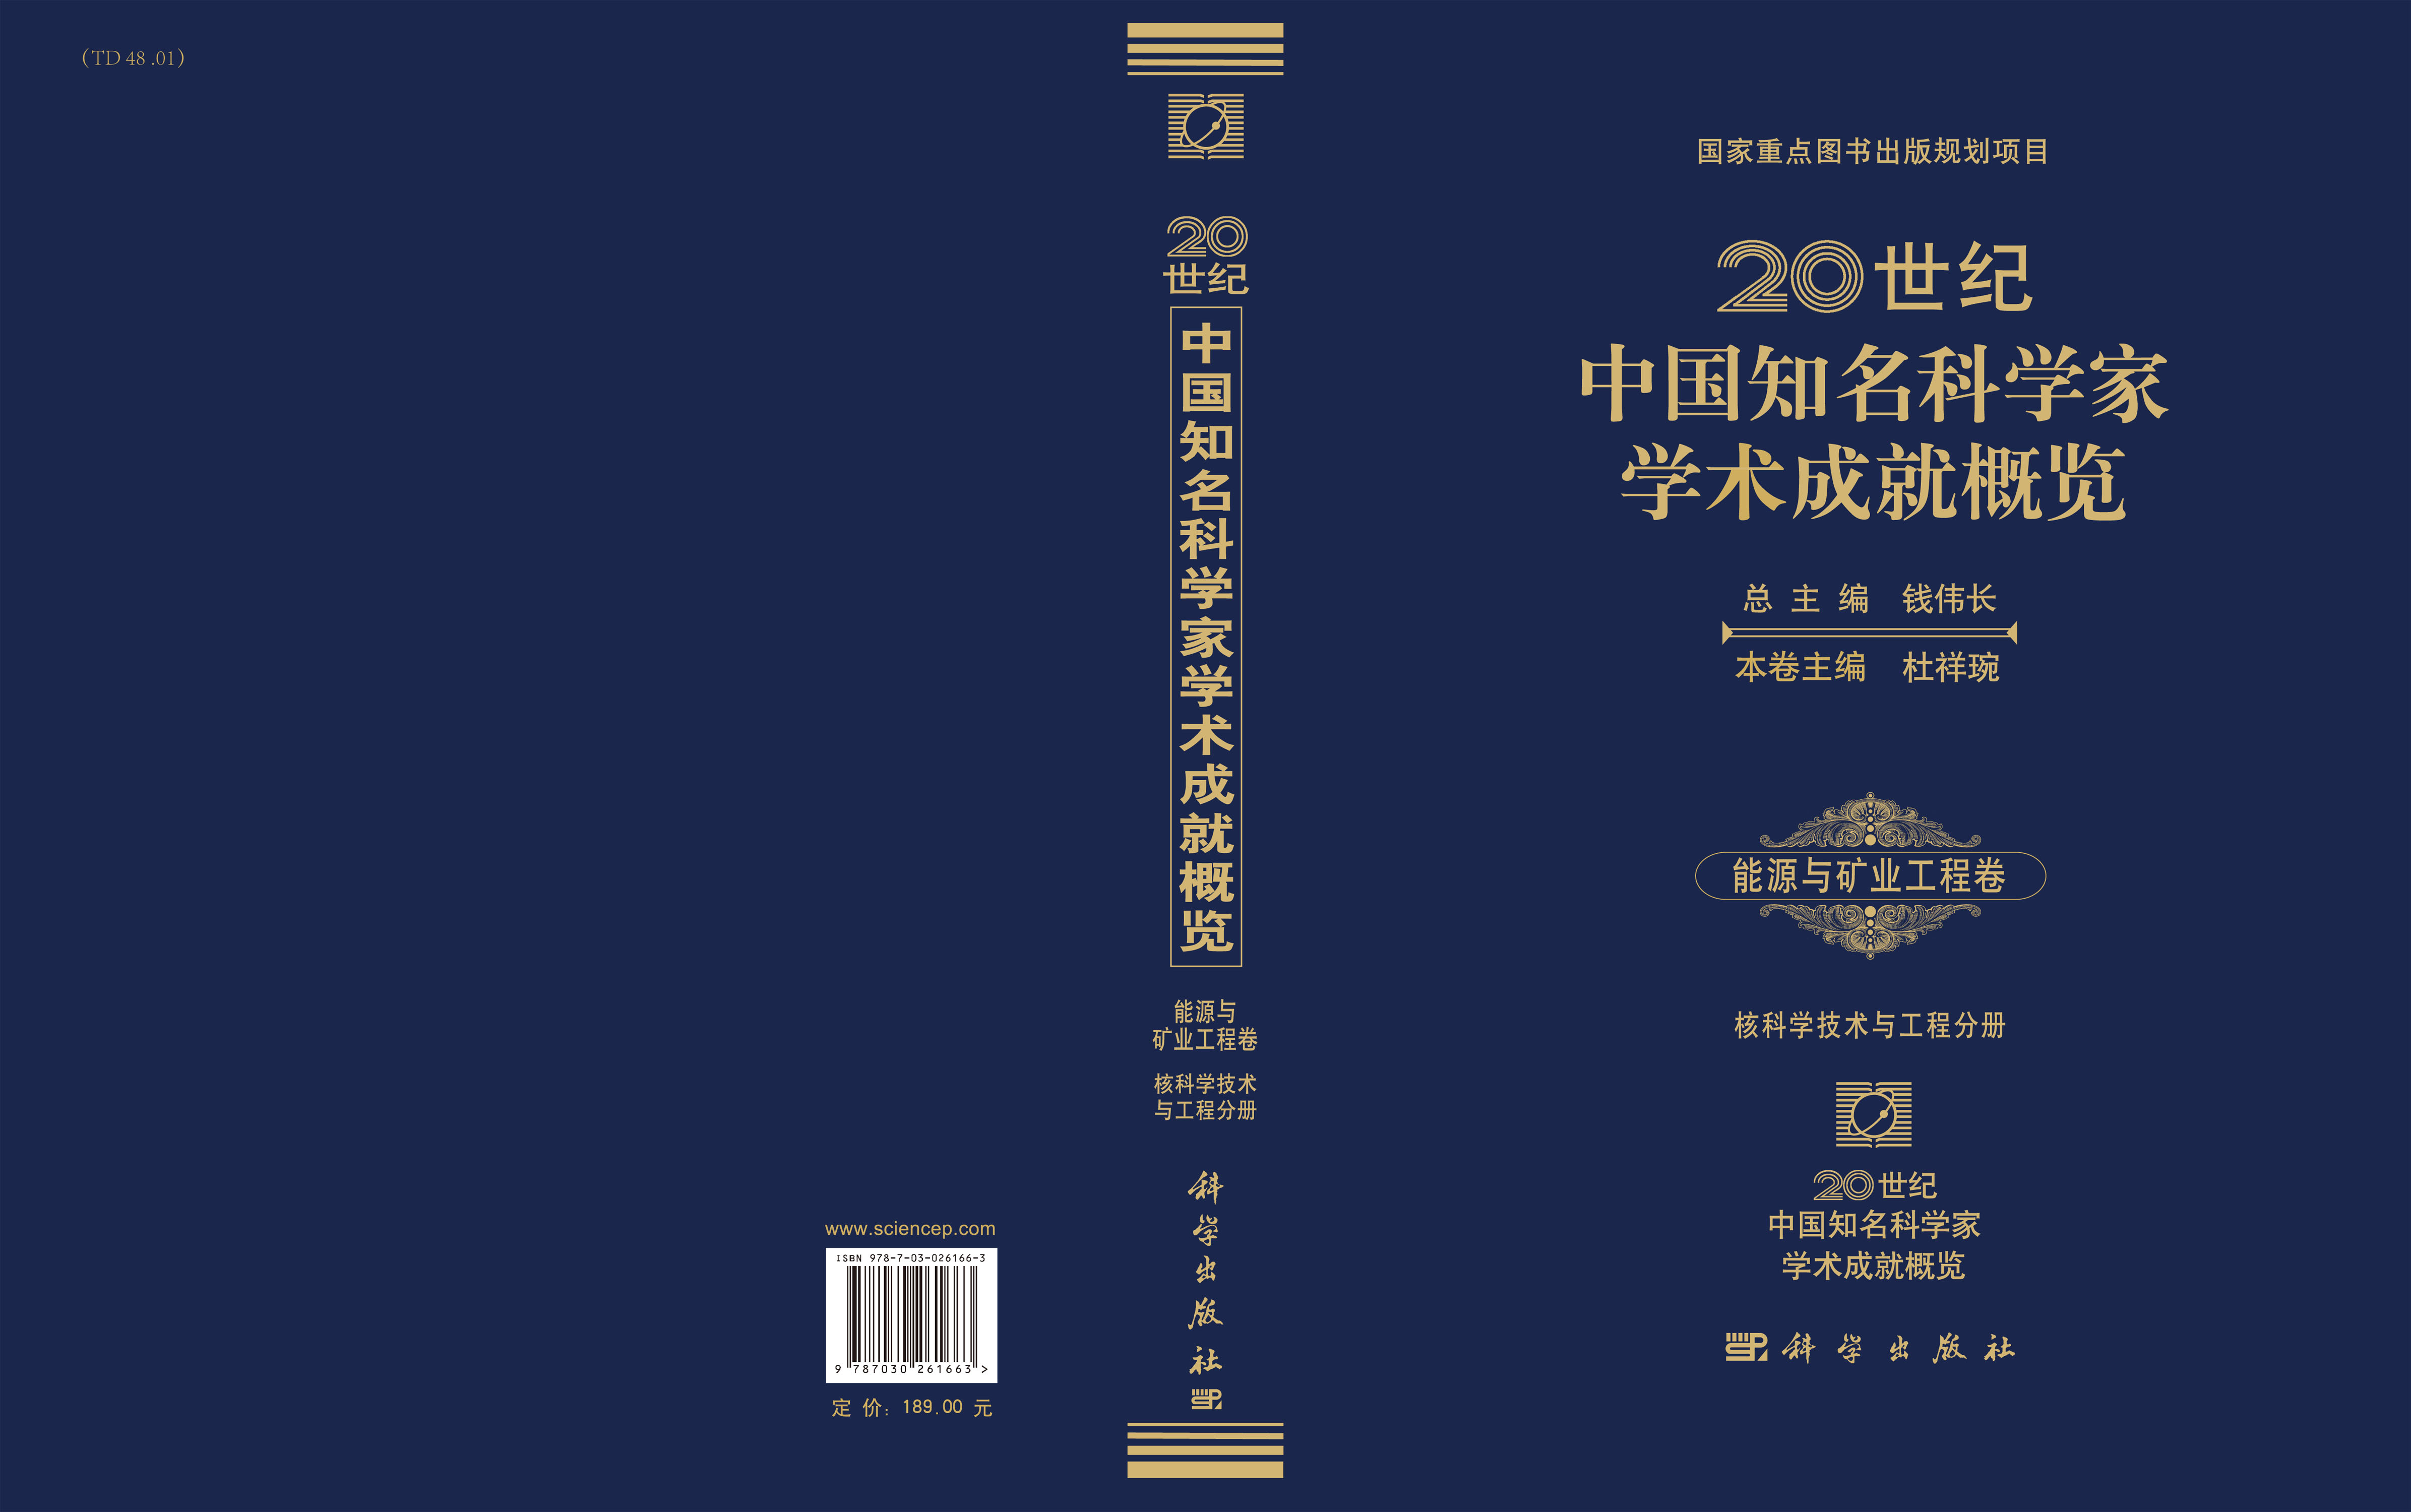 20世纪中国知名科学家学术成就概览・能源与矿业工程学卷・核科学技术与工程分册